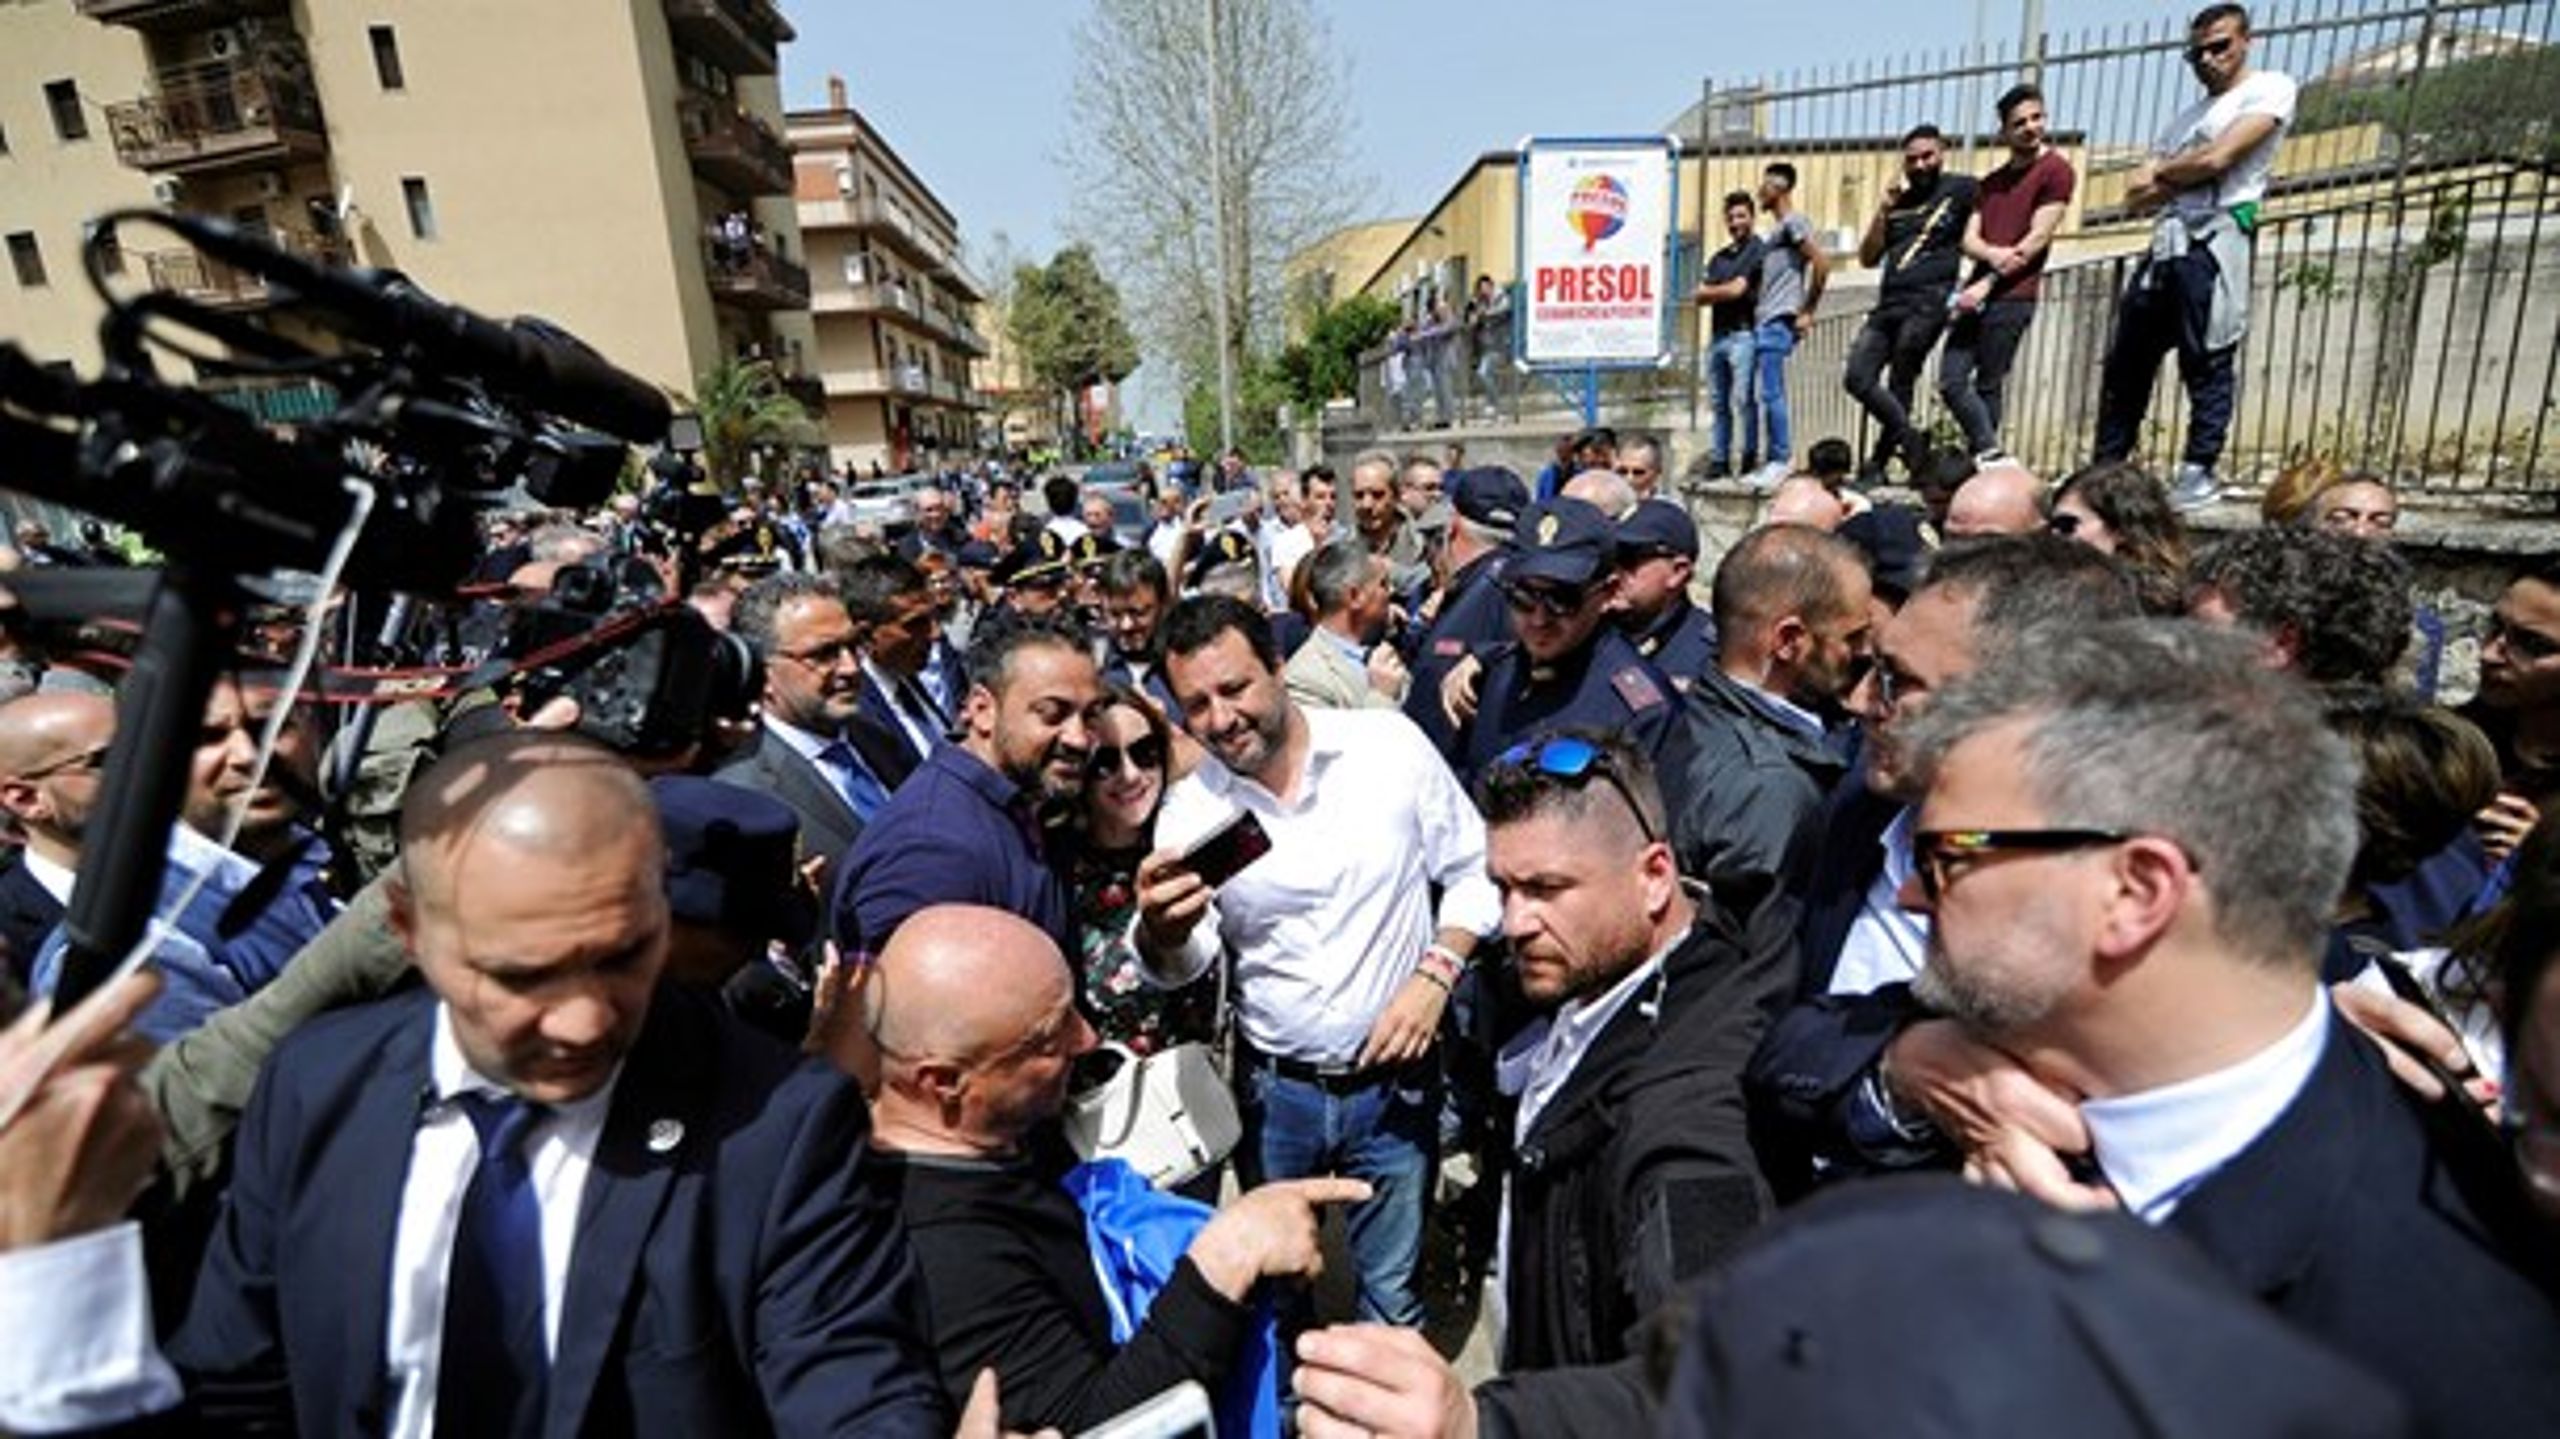 Nationalistleder og indenrigsminister Matteo Salvini, da han i april åbnede en ny politistation i den sicilianske landsby Corleone, kendt fra Godfather-filmene.